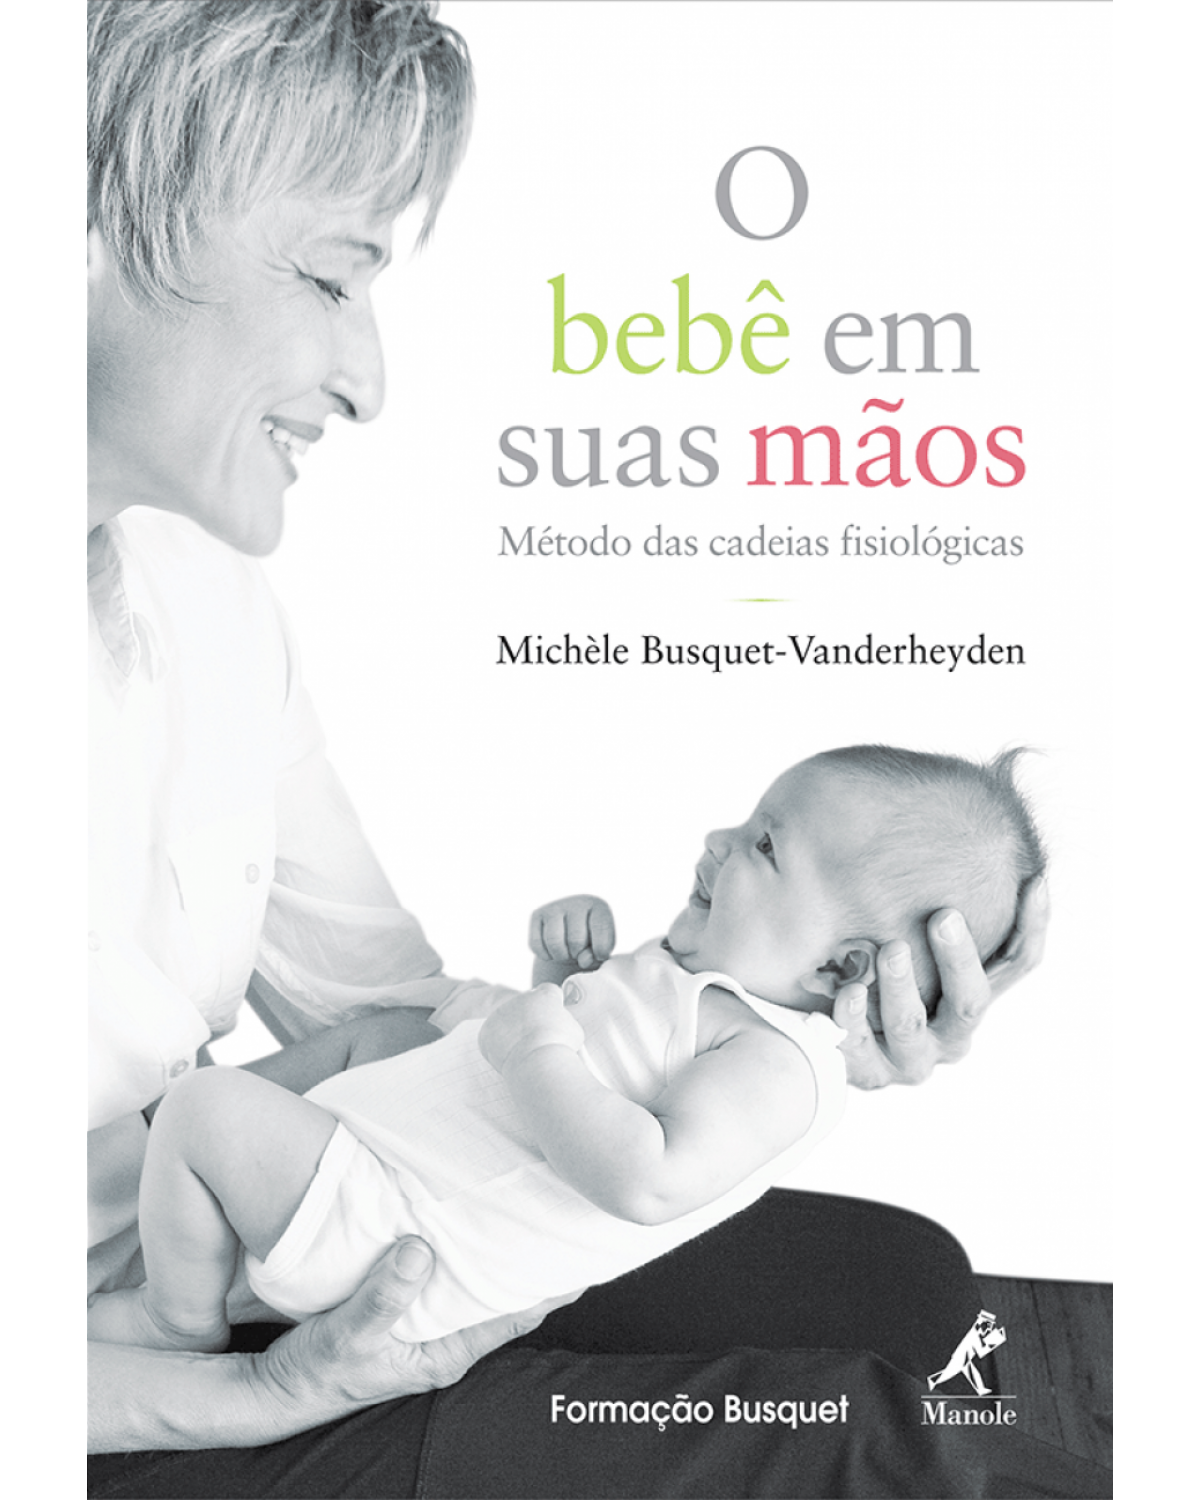 O bebê em suas mãos - Método das cadeias fisiológicas - 1ª Edição | 2009